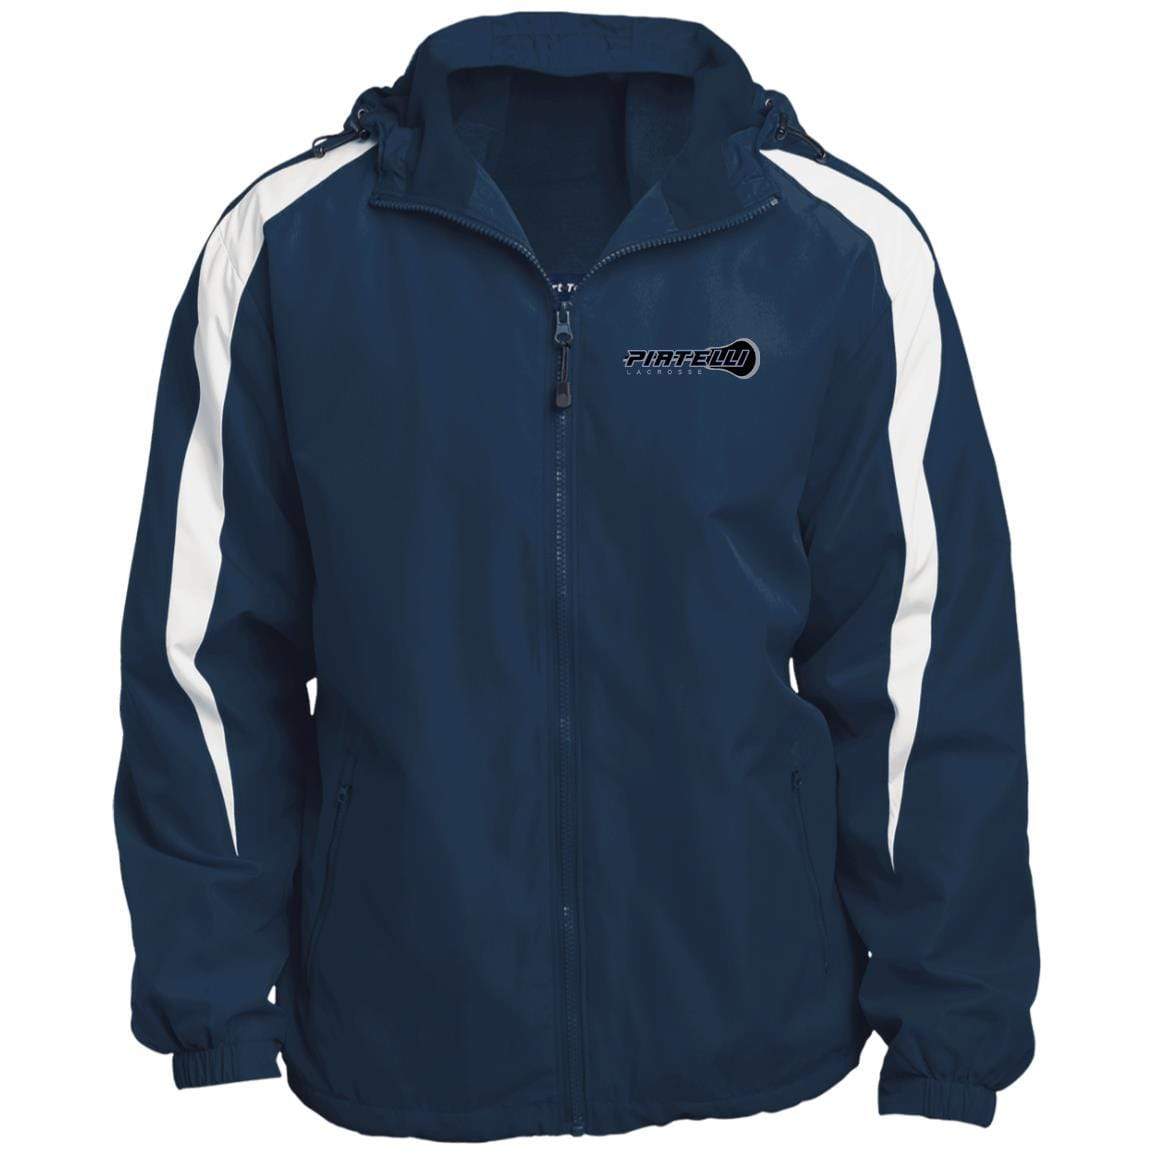 Piatelli Lacrosse Fleece Lined Hooded Premium Jacket Signature Lacrosse